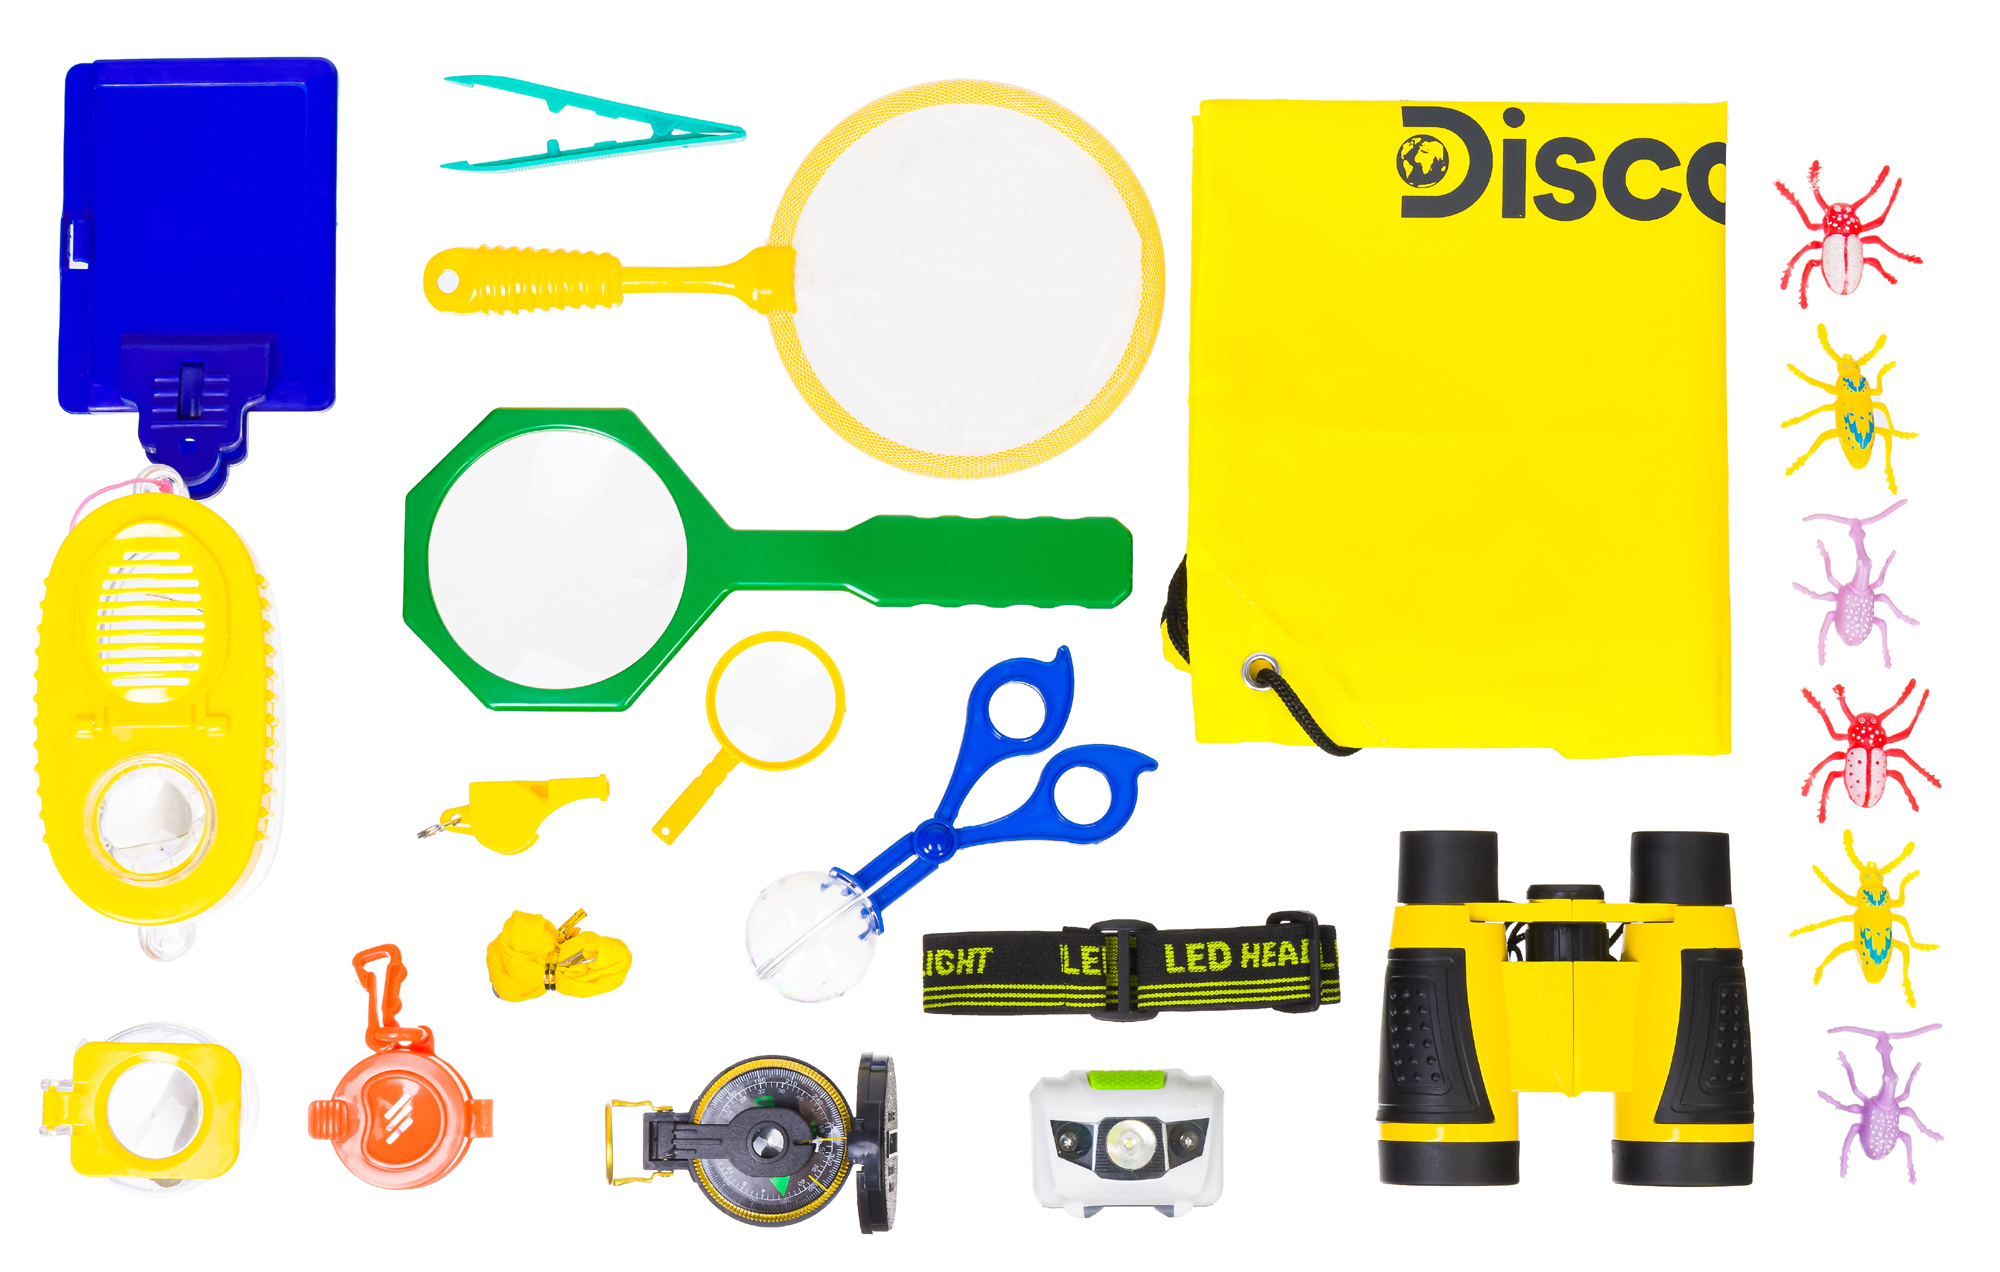 Dětská přírodovědná sada Discovery Basics EK70 Explorer Kit je určená pro všechny malé zvídavce, kteří se chtějí stát uznávaným biologem